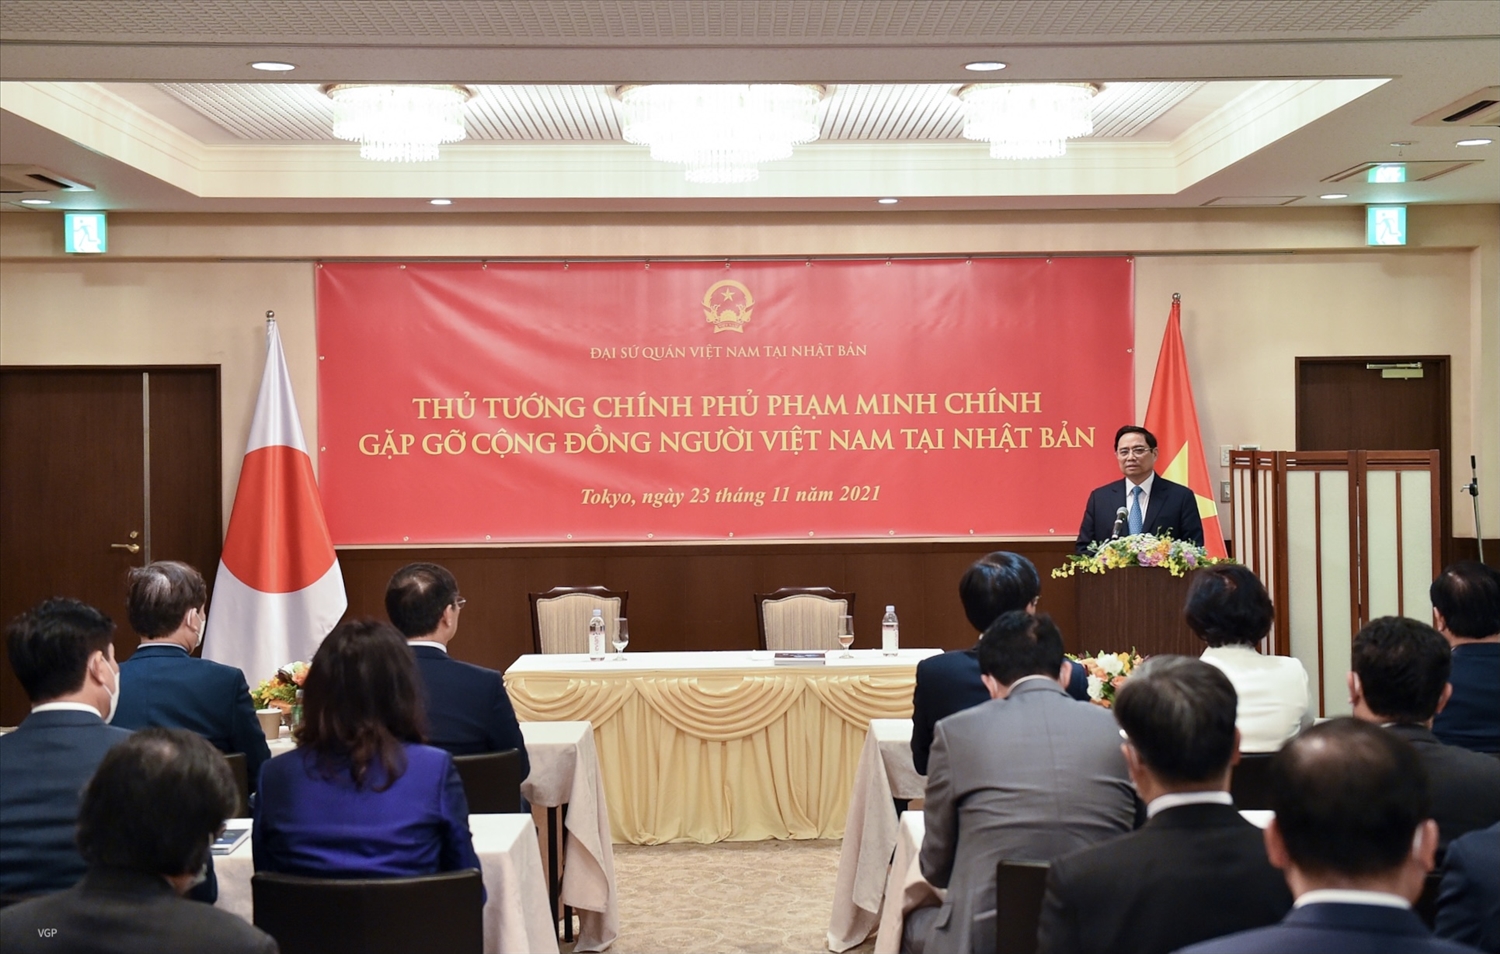 Thủ tướng phát biểu tại buổi gặp gỡ cộng đồng người Việt tại Nhật.. Ảnh: VGP/Nhật Bắc